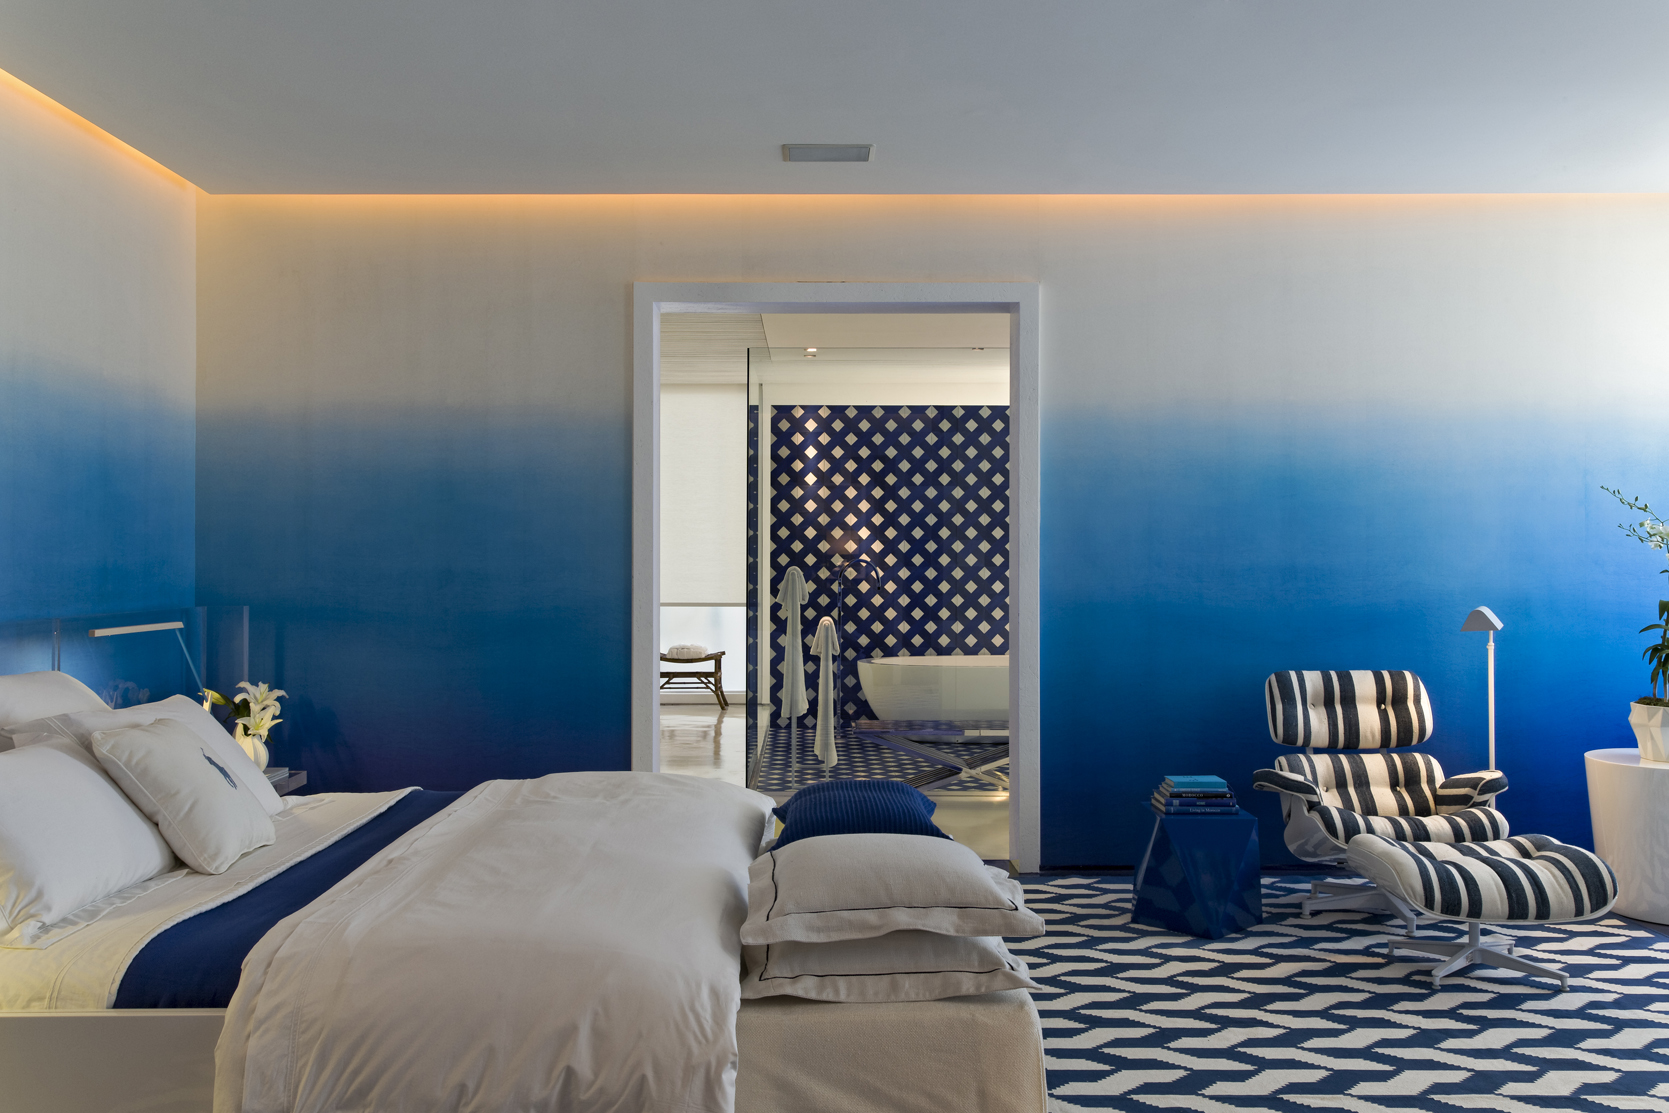 Покраска стен варианты: варианты и примеры окраски конструкций квартире, в какой цвет лучше красить бетонные стены